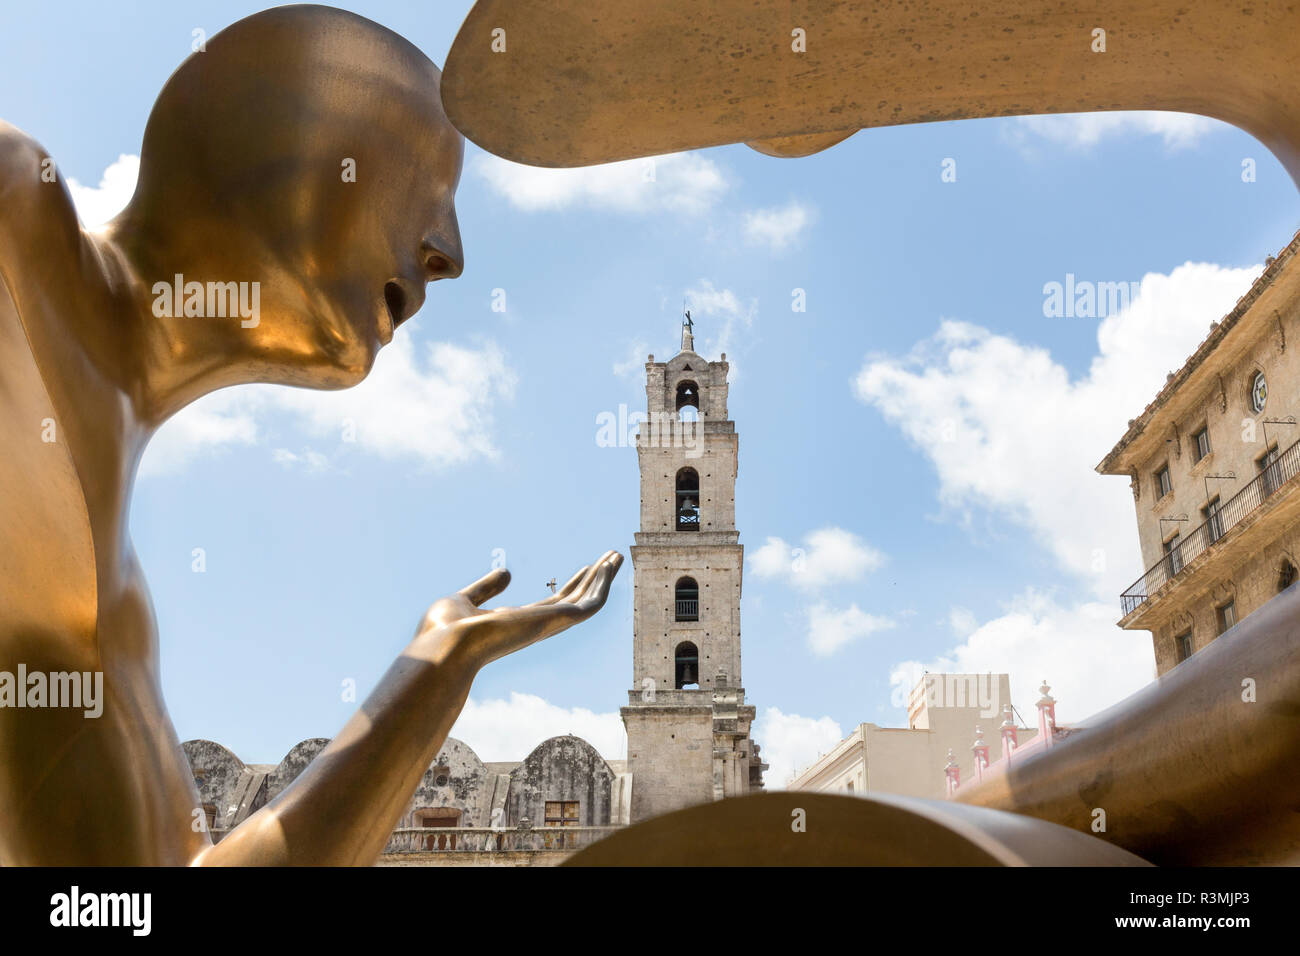 Cuba, La Habana, l'Avana Vecchia. Moderna statua in bronzo e la vecchia torre. Credito come: Wendy Kaveney Jaynes / Galleria / DanitaDelimont.com Foto Stock